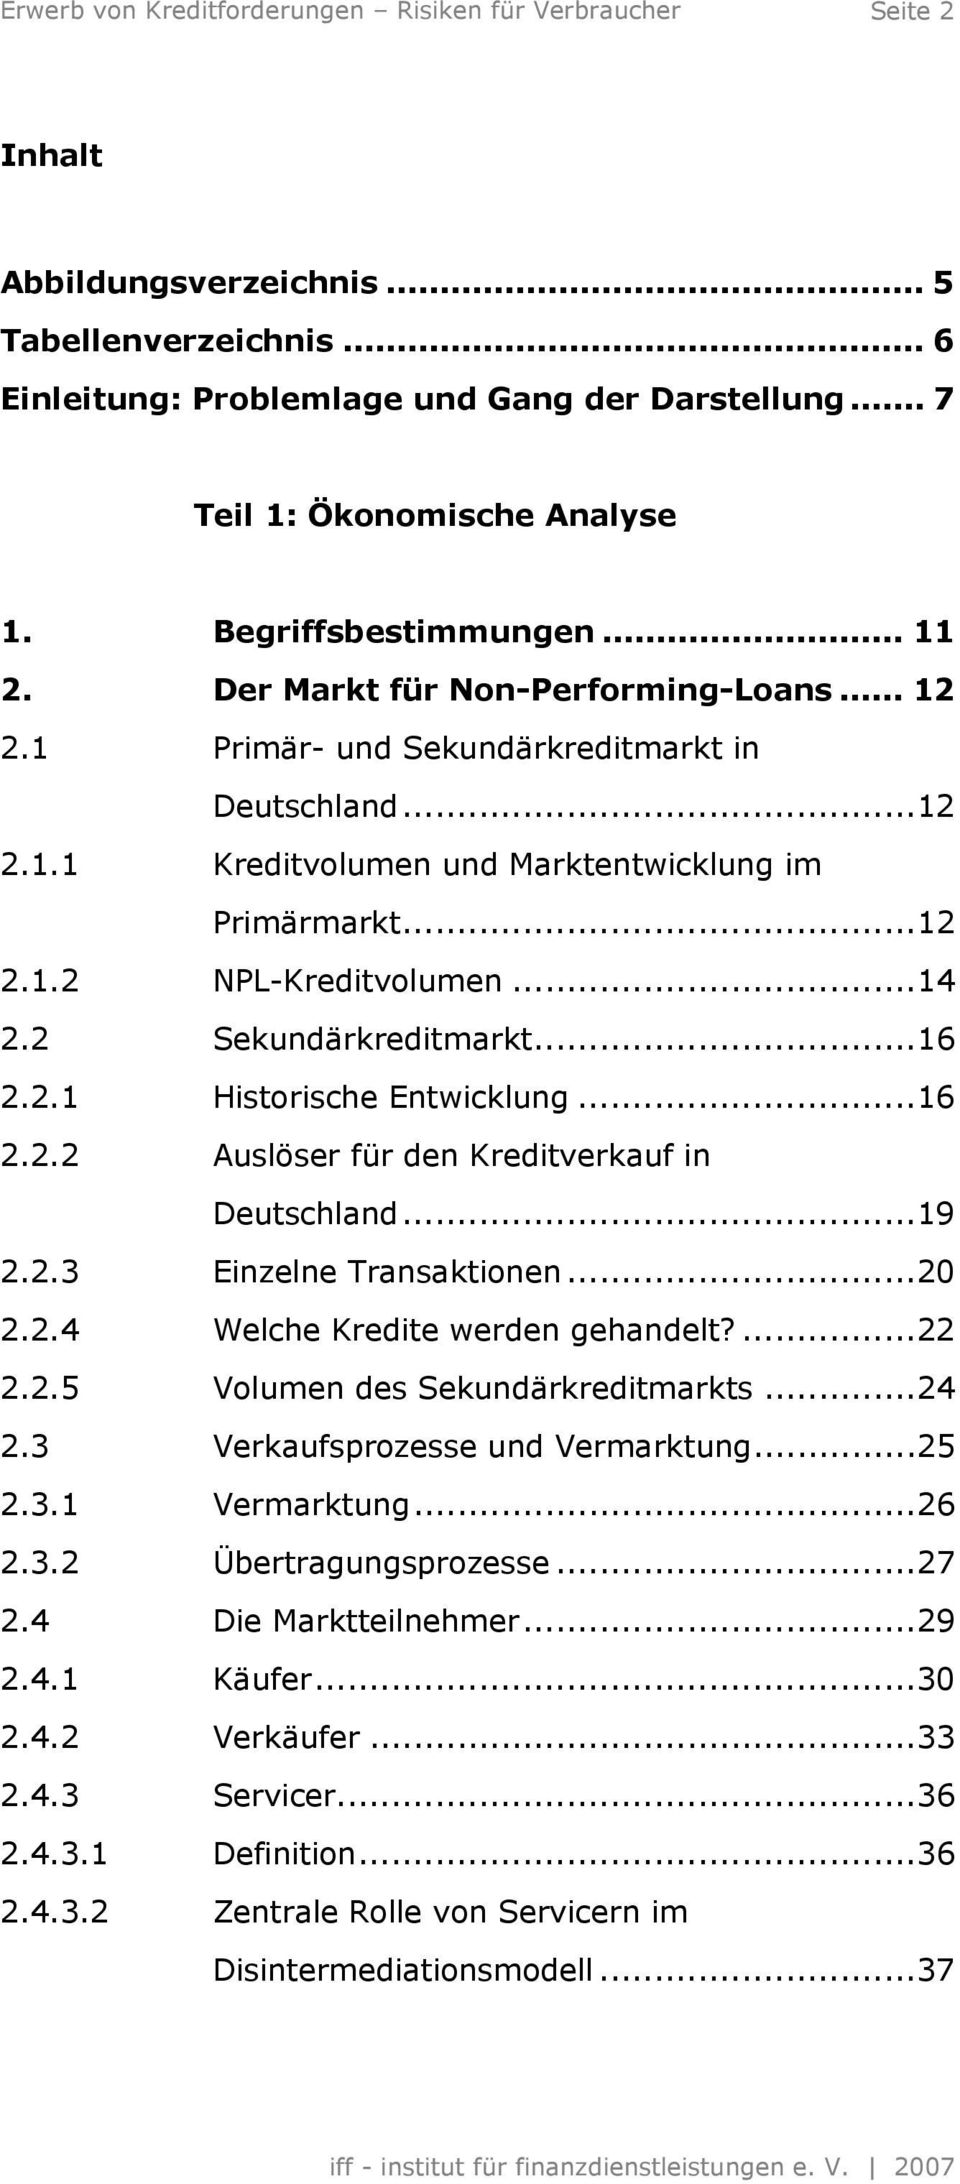 2 Sekundärkreditmarkt...16 2.2.1 Historische Entwicklung...16 2.2.2 Auslöser für den Kreditverkauf in Deutschland...19 2.2.3 Einzelne Transaktionen...20 2.2.4 Welche Kredite werden gehandelt?...22 2.